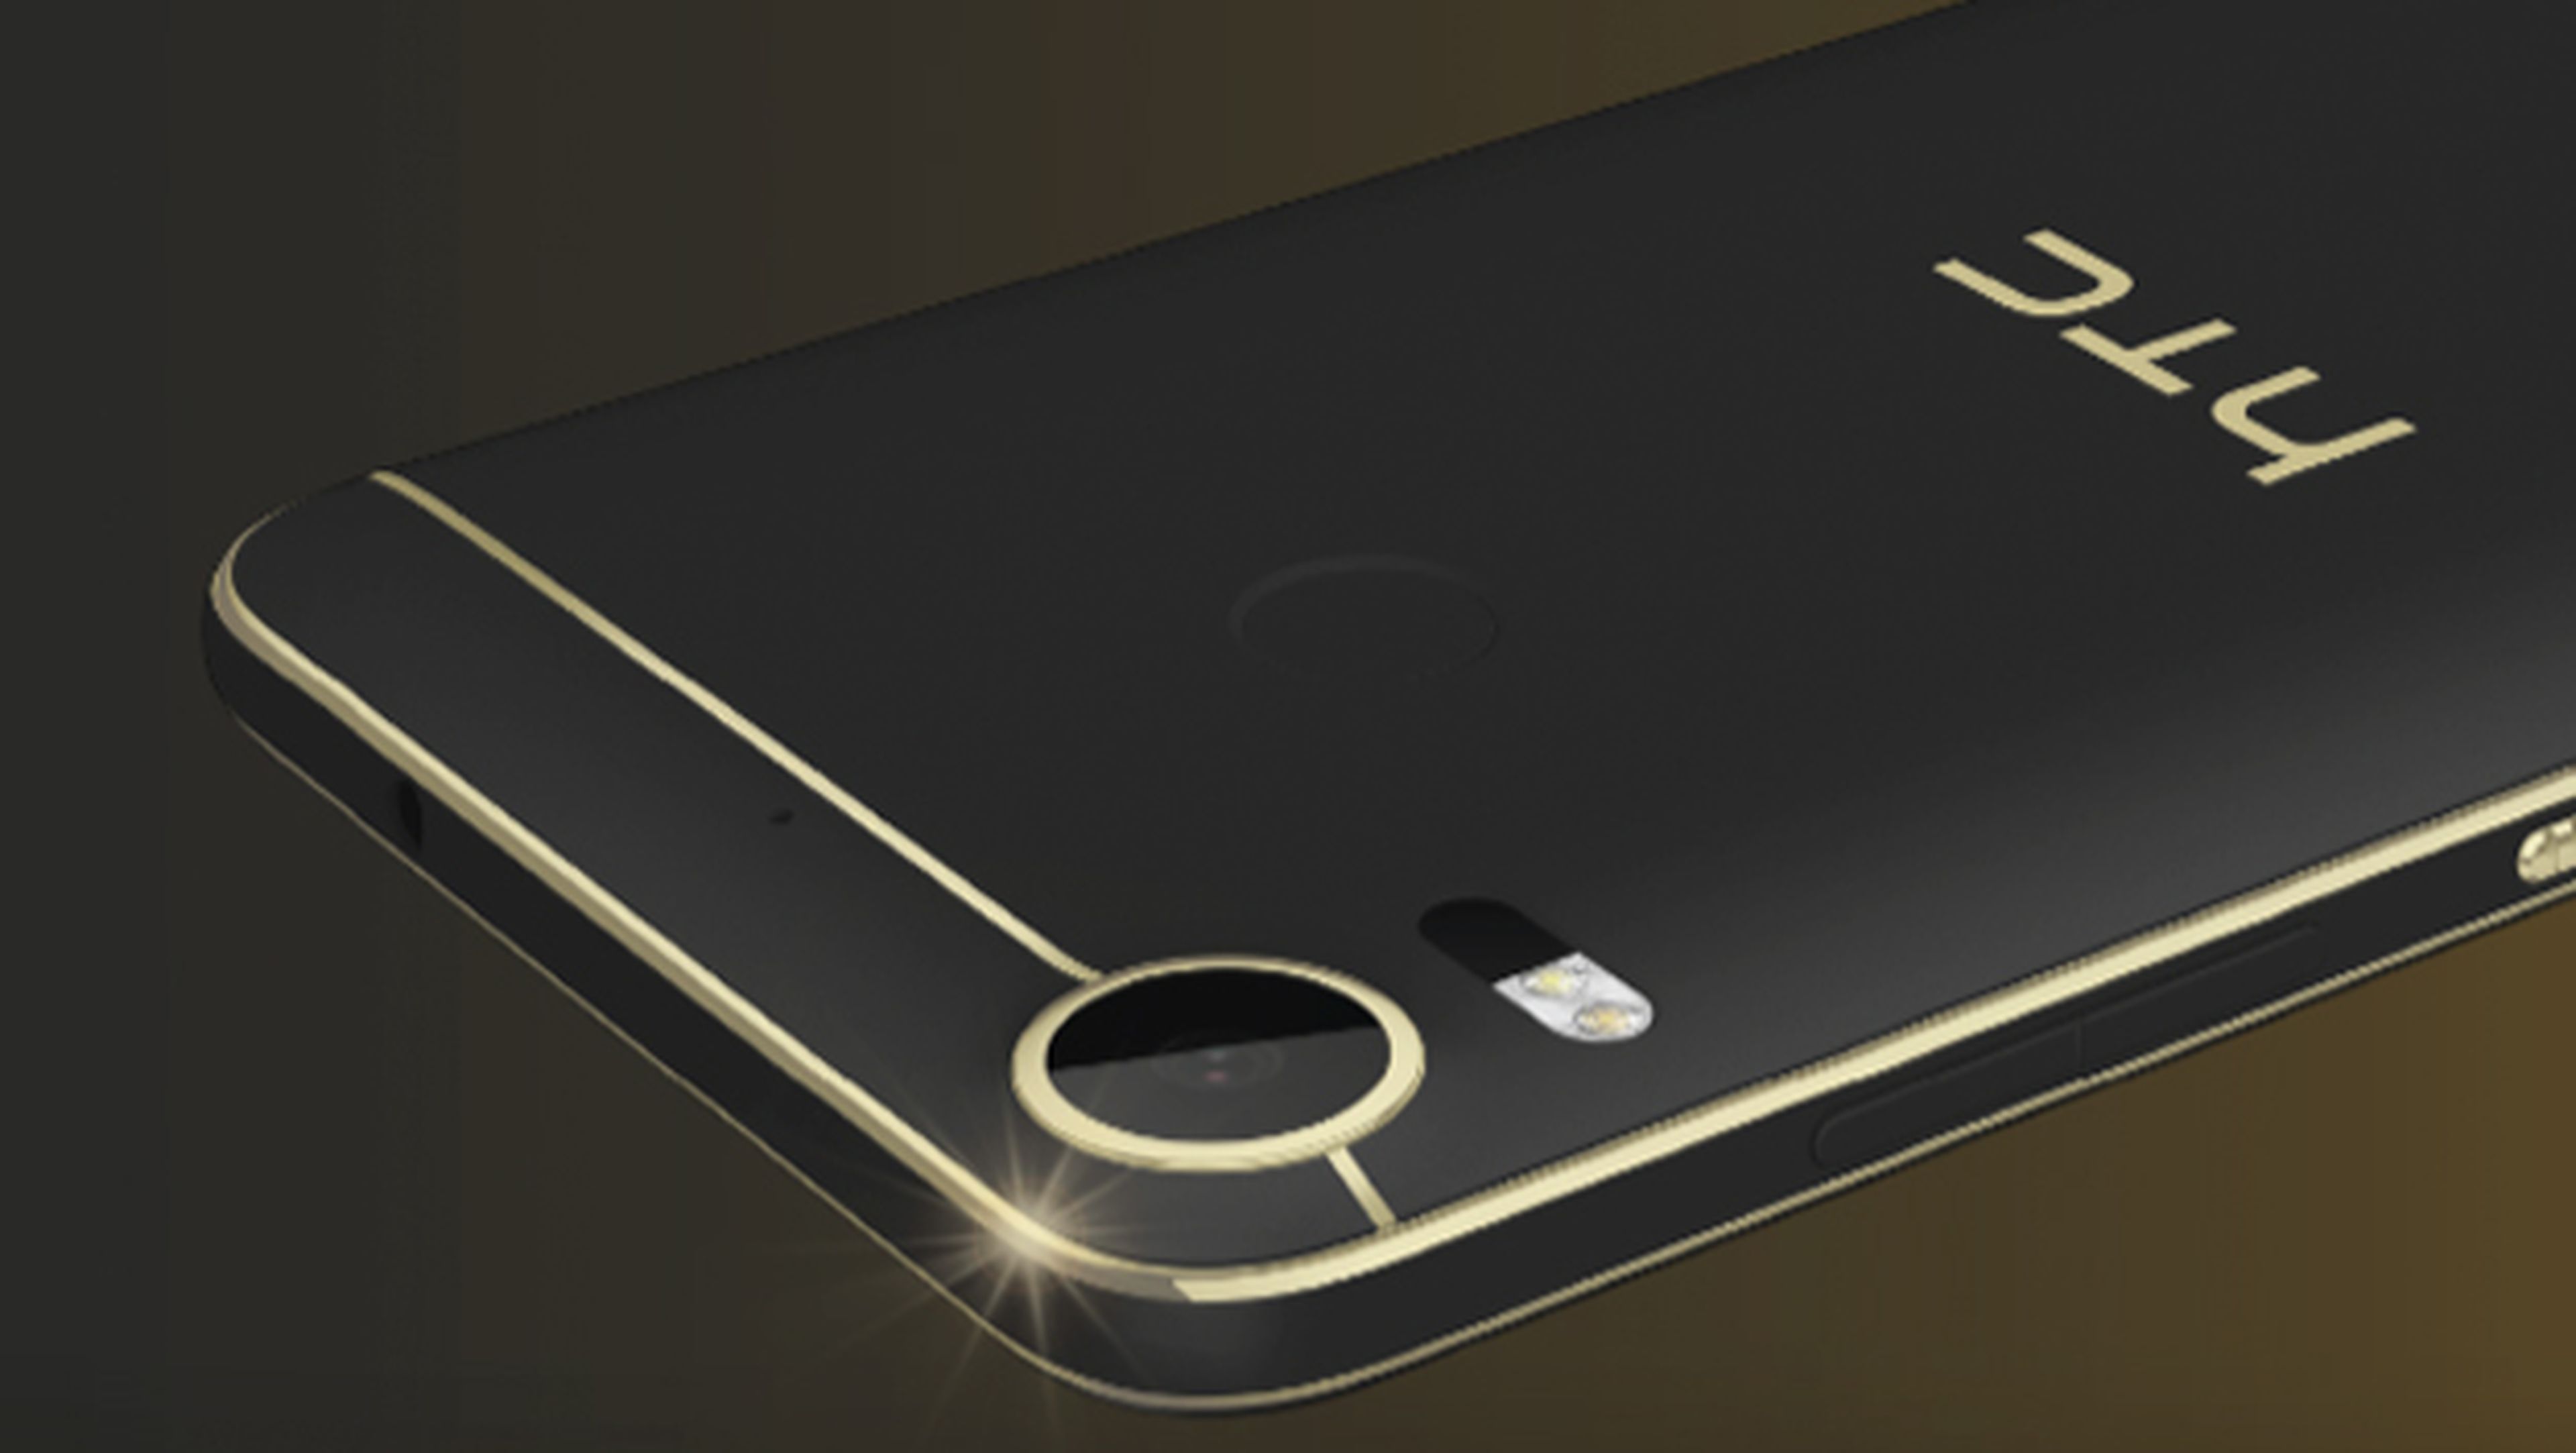 HTC Desire 10 lifestyle, un móvil inspirado en el art decó